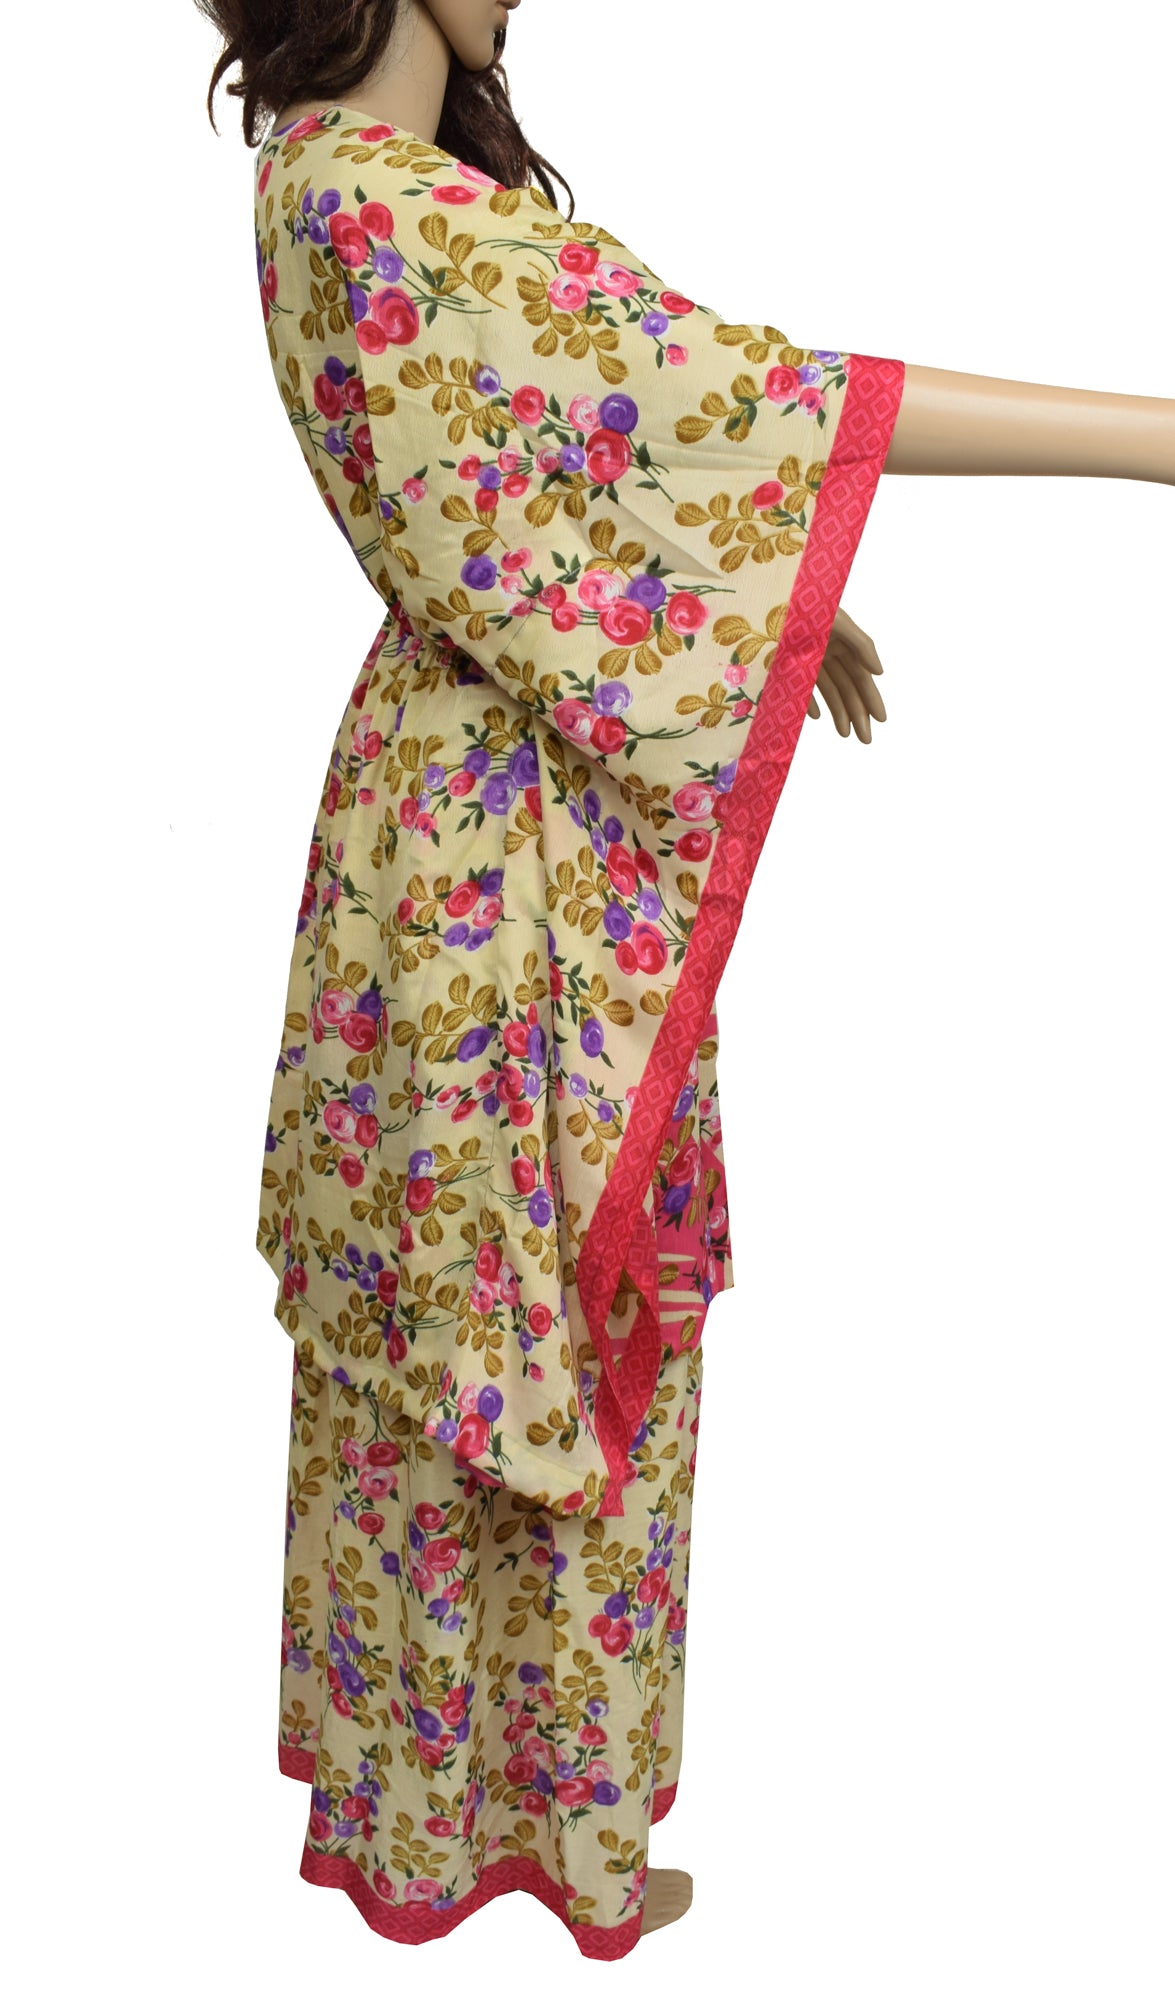 Sushila Vintage Blend Silk Sari Dress upcycled Plazo Pants Kafthan Top Cream